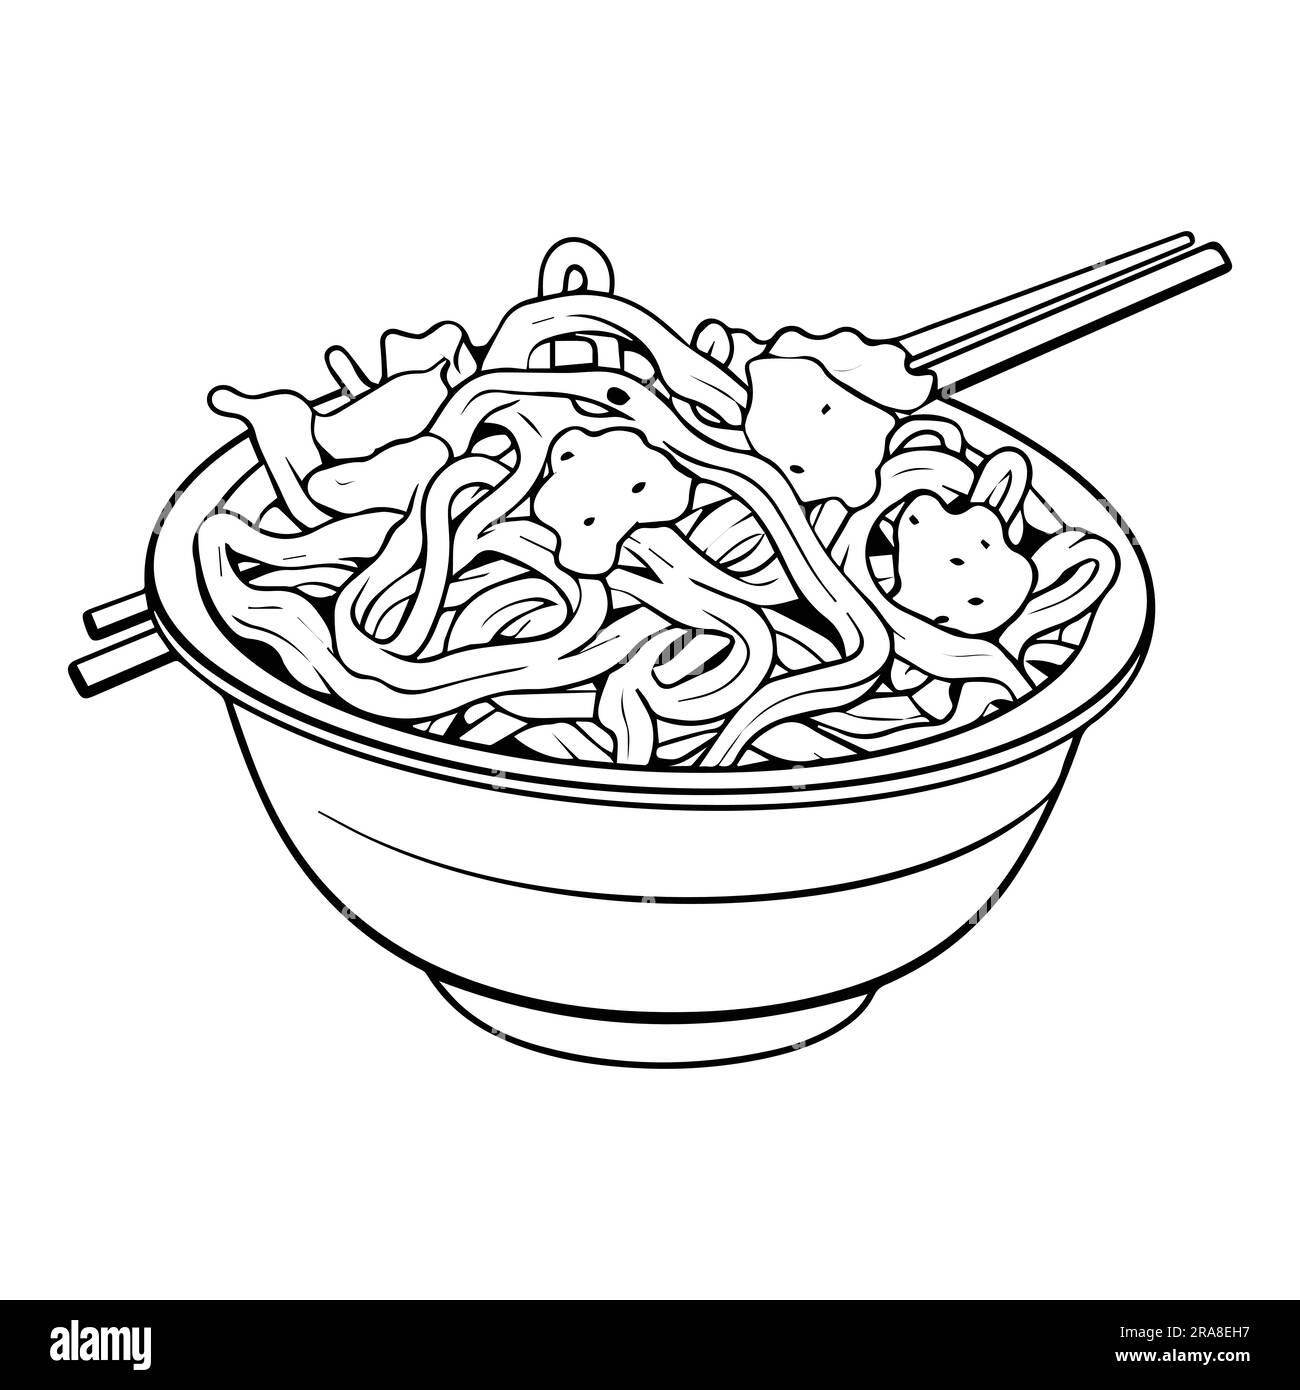 Deliziosi spaghetti disegnati a mano in stile doodle isolati sullo sfondo Illustrazione Vettoriale